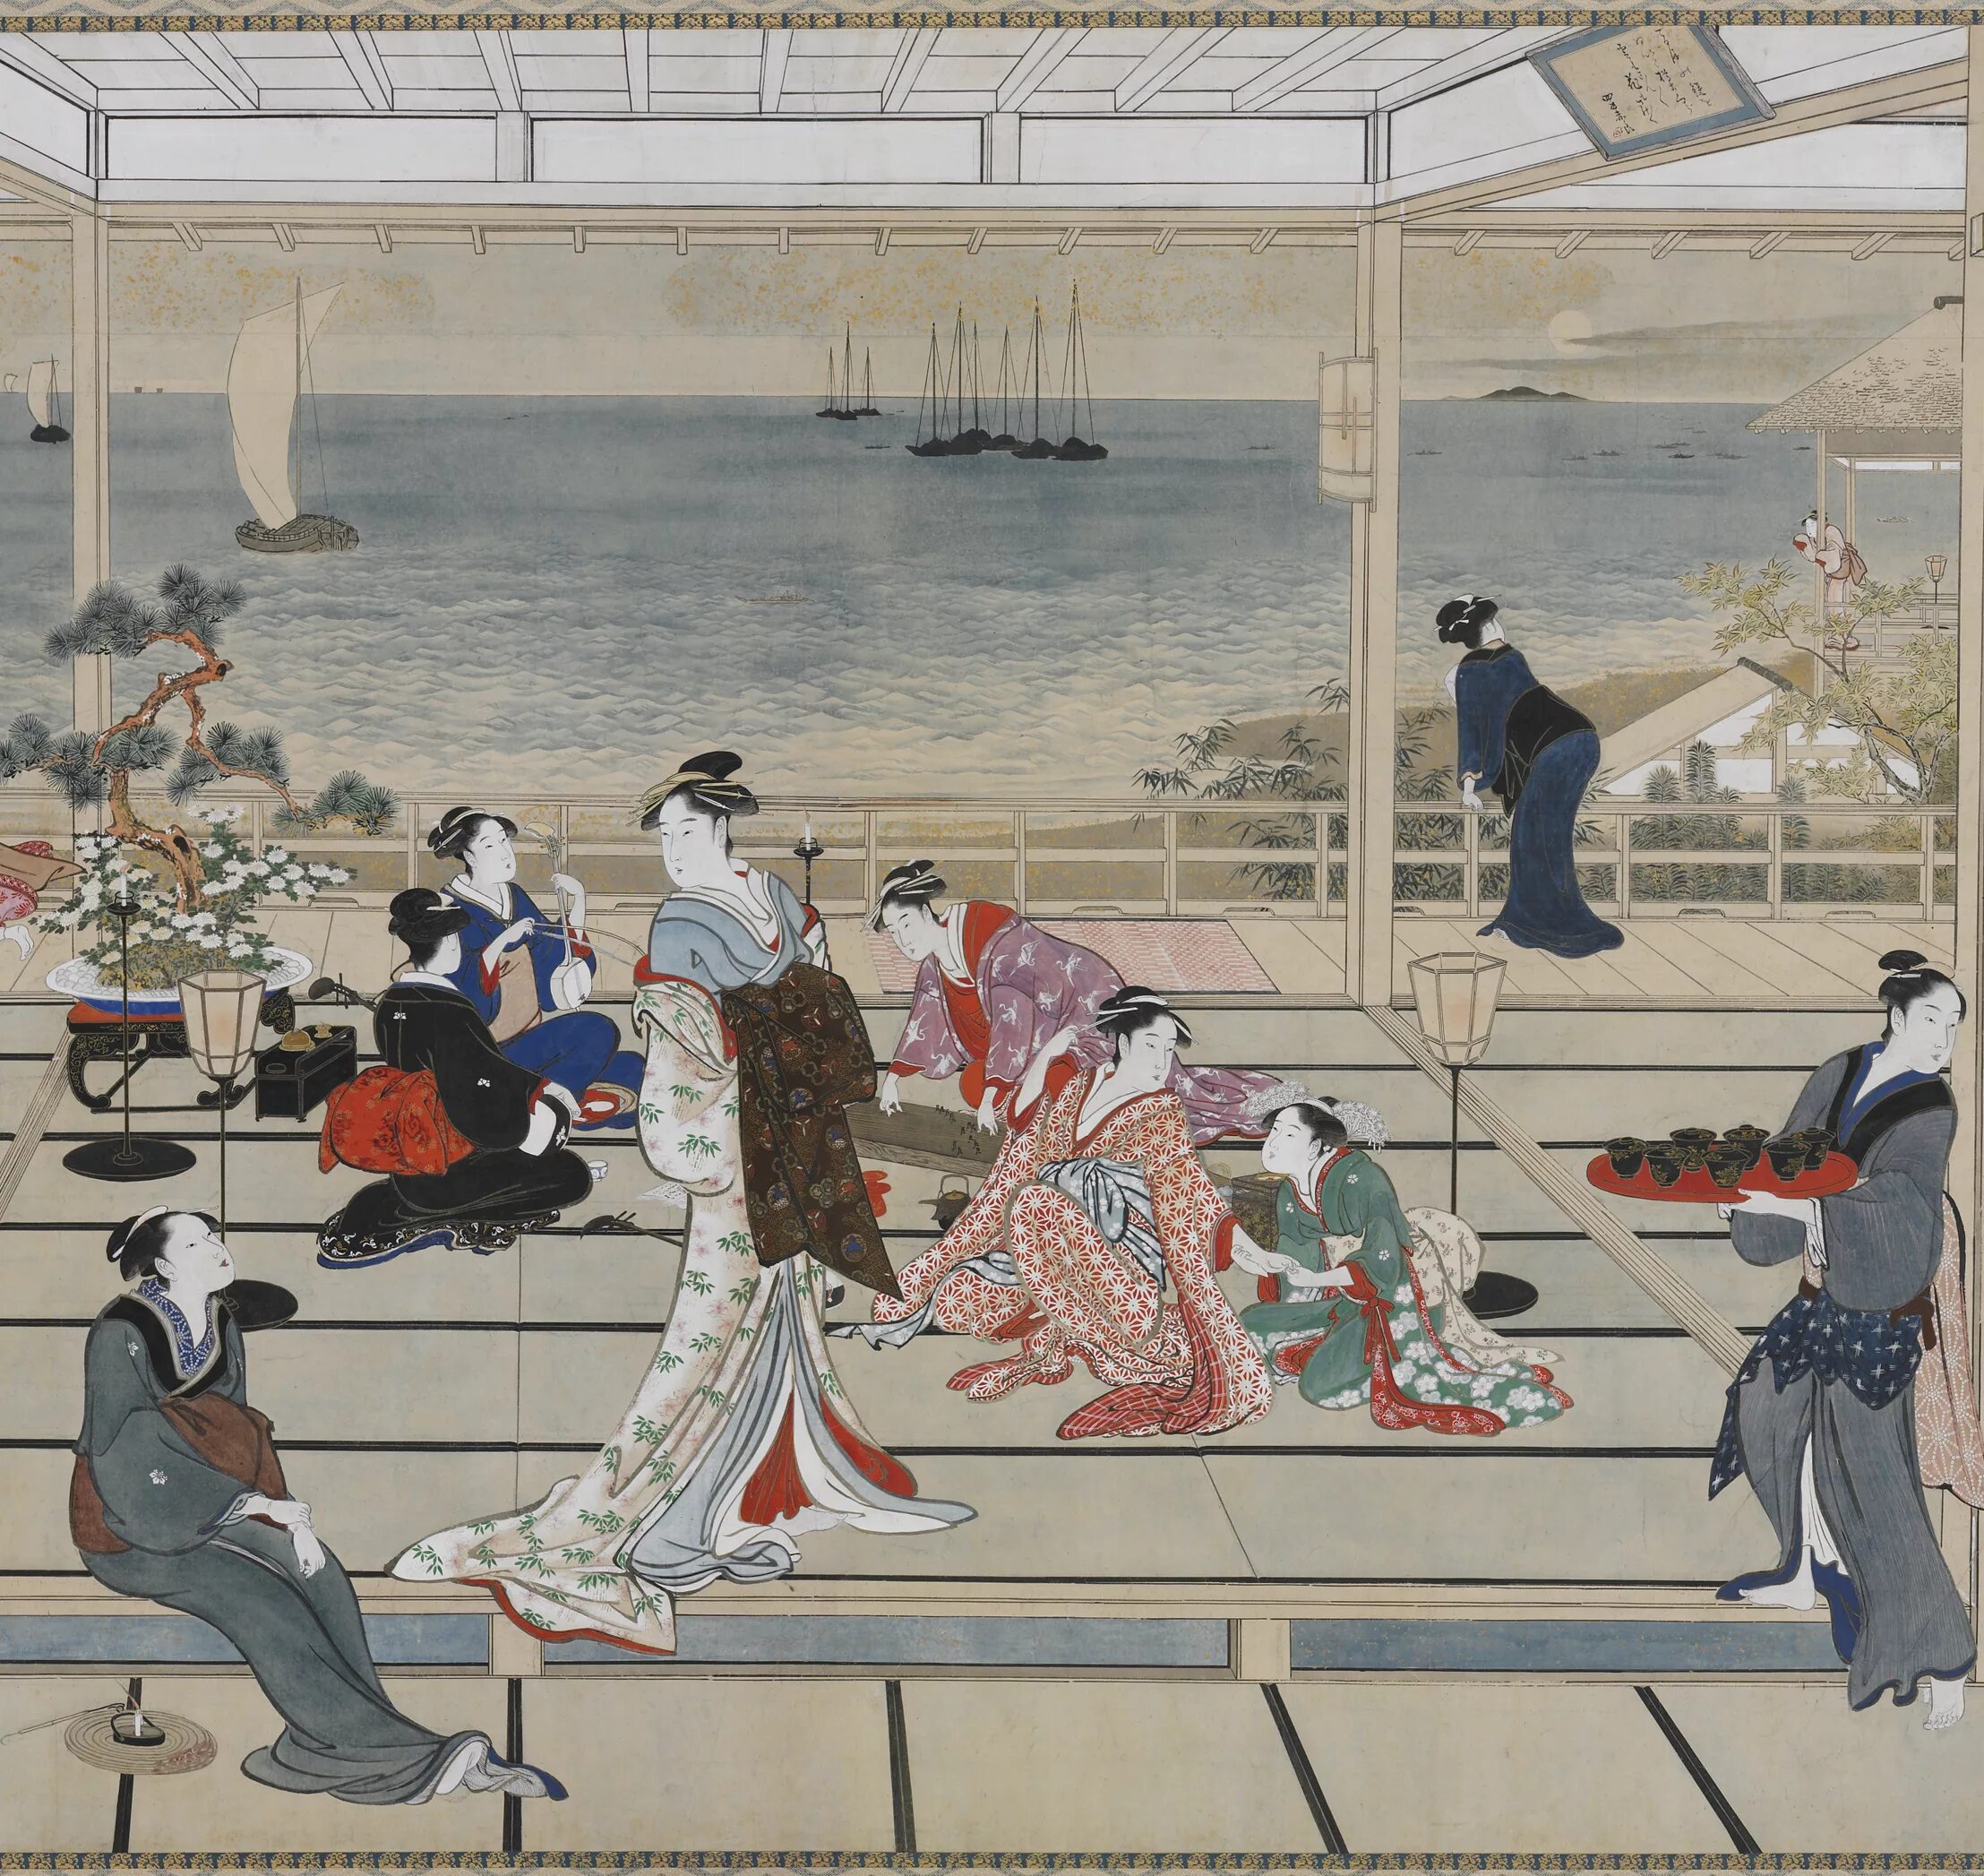 Культура эпохи Эдо, Япония 17-19 век. Период Эдо Токугава. Период Эдо (1603—1868). Эпоха сёгуната Токугава 19 век. Безупон япония